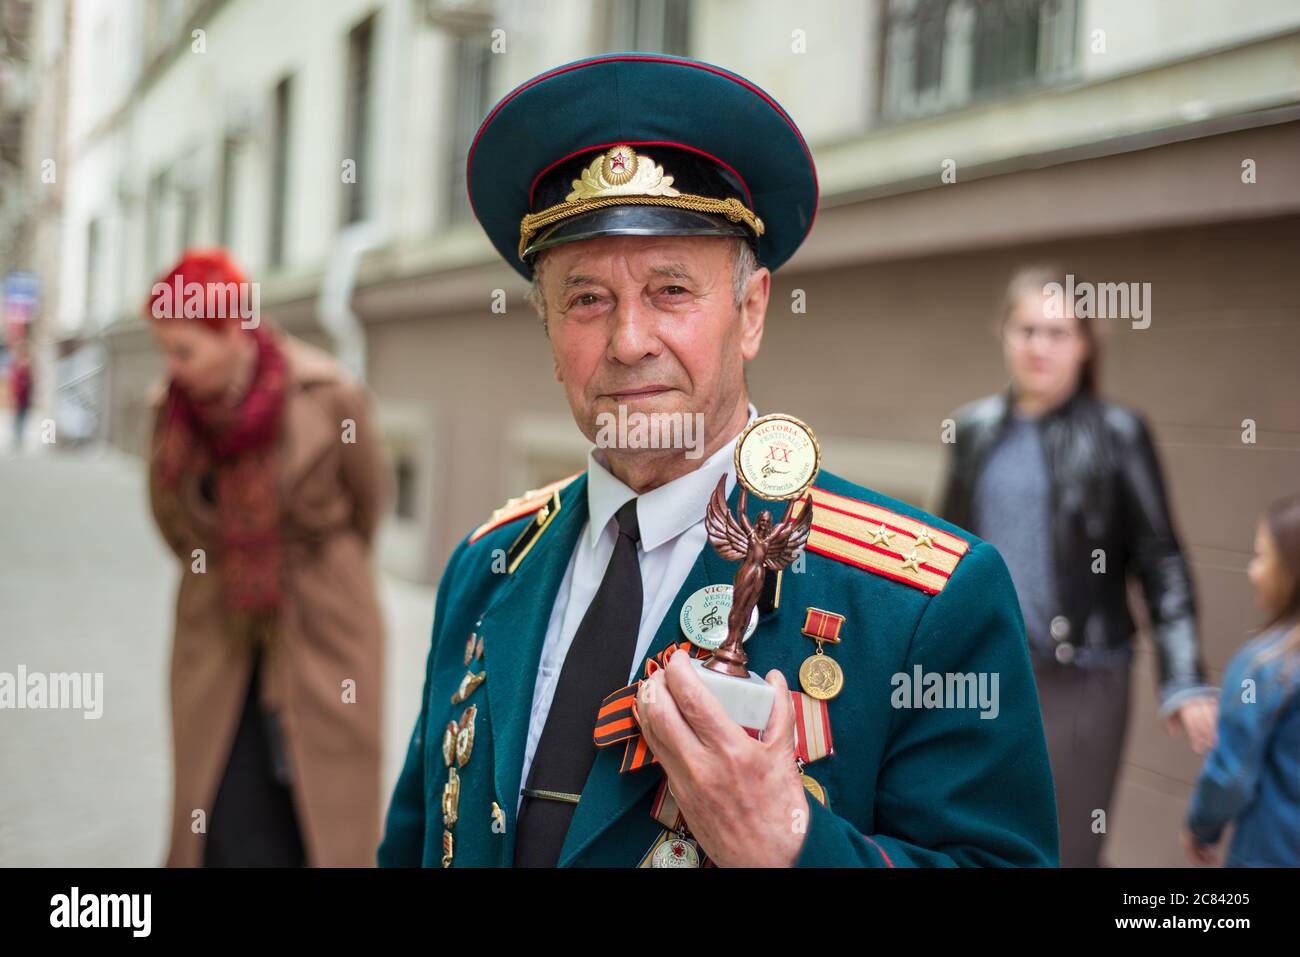 Chisinau / Moldova - 15 mai 2020 : Portrait d'un soldat vétéran recevant un prix lors de la célébration du jour de la victoire de l'URSS sur l'Allemagne pendant la Seconde Guerre mondiale Banque D'Images